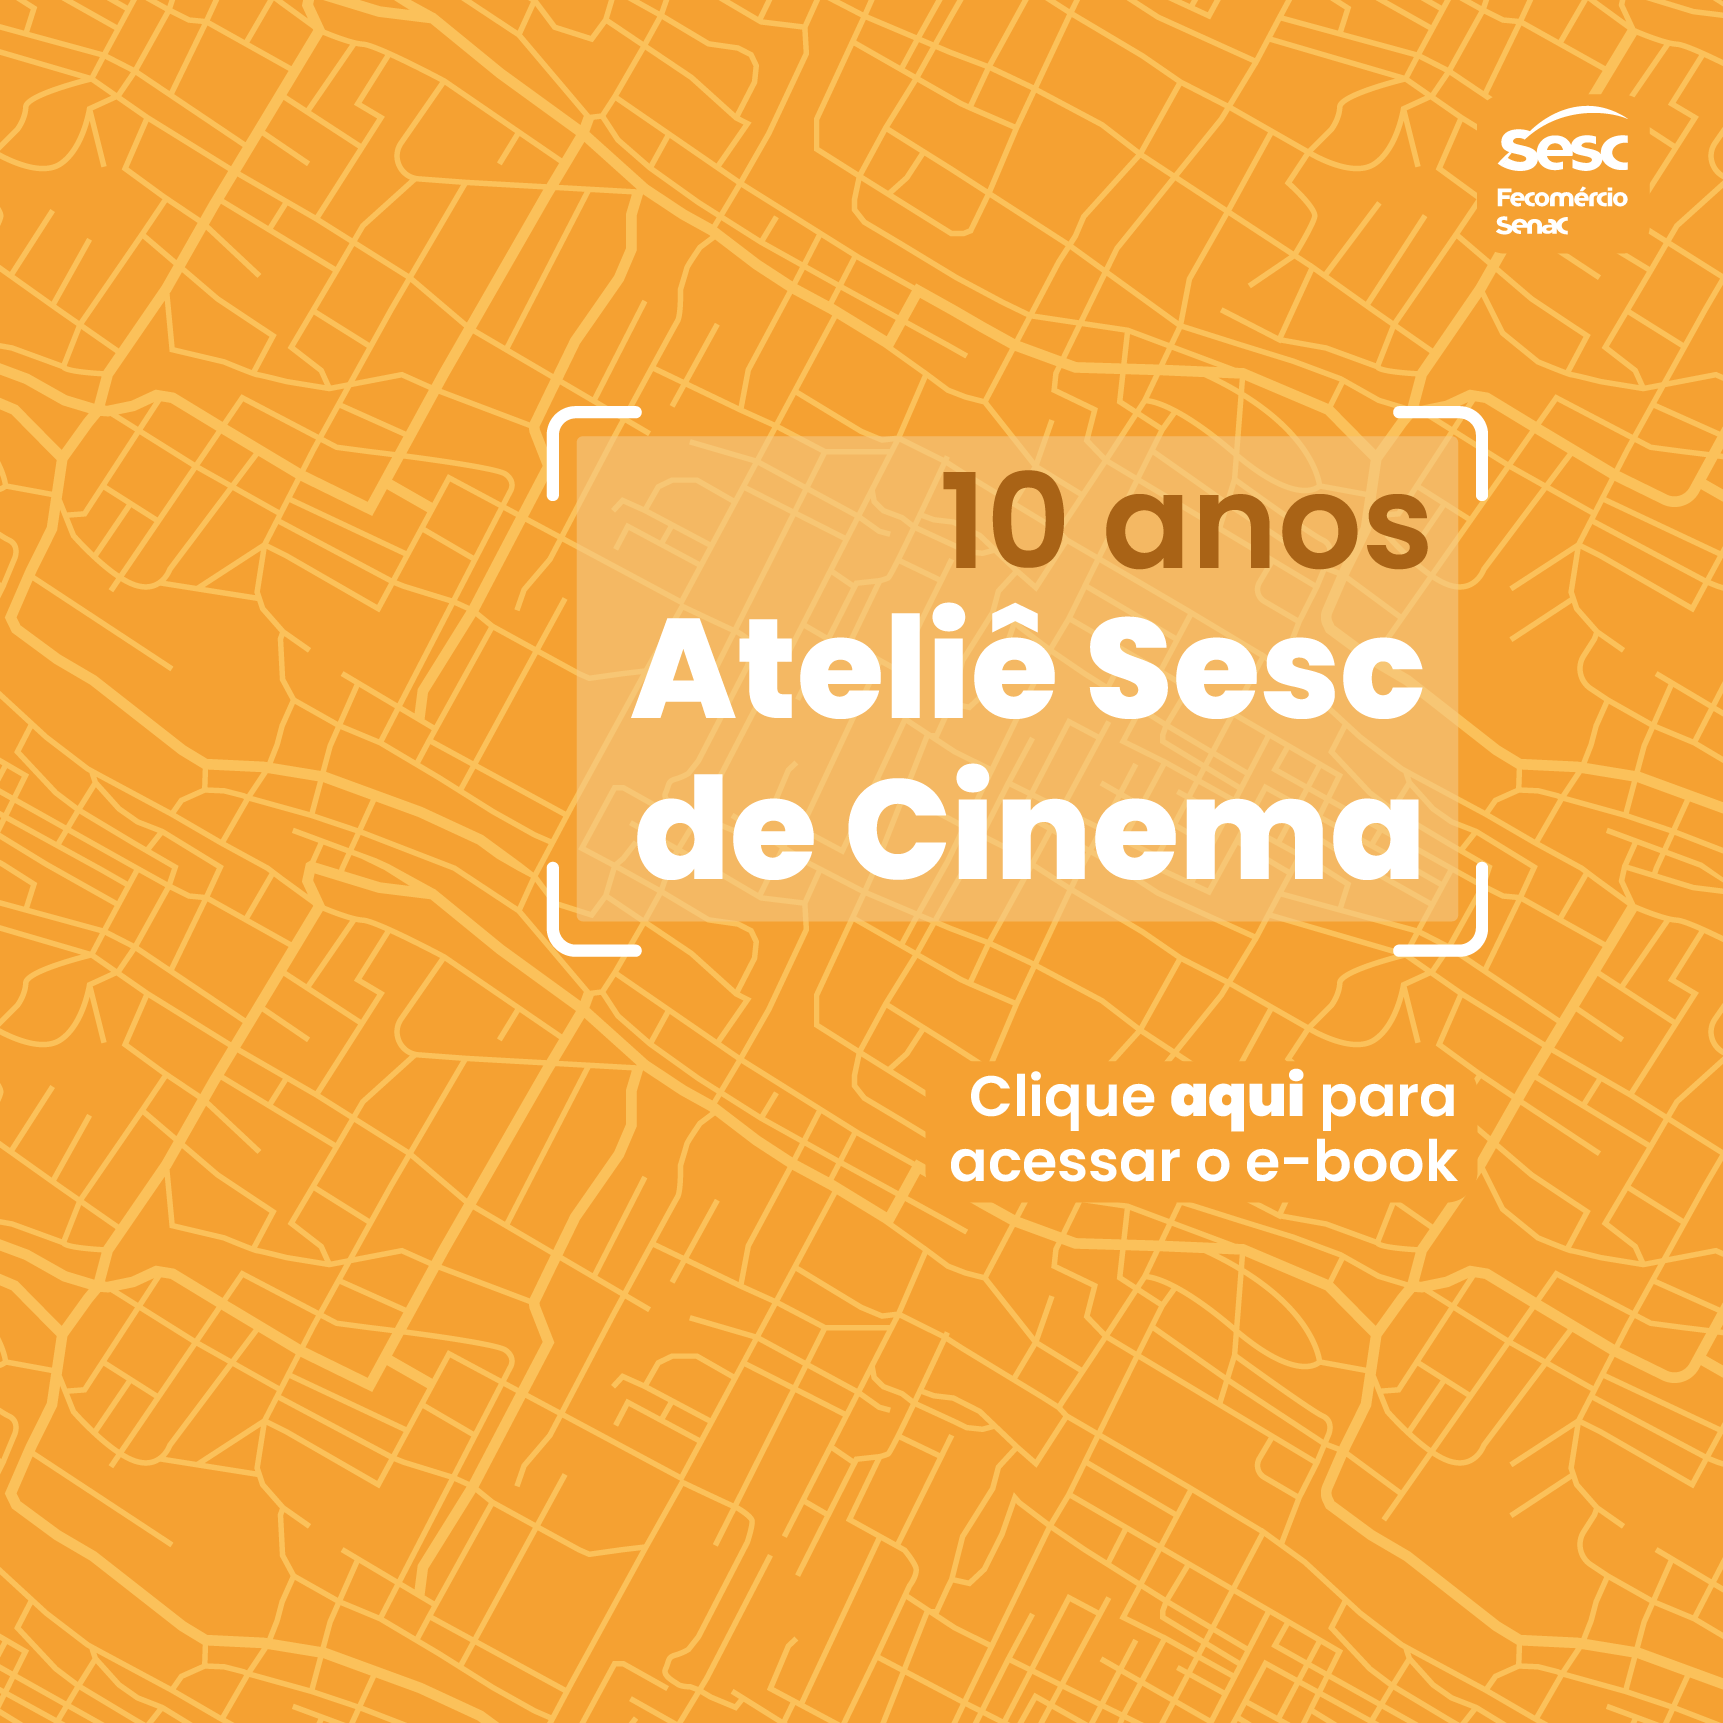 Ateliê Sesc de Cinema 10 anos - Banner para mobile